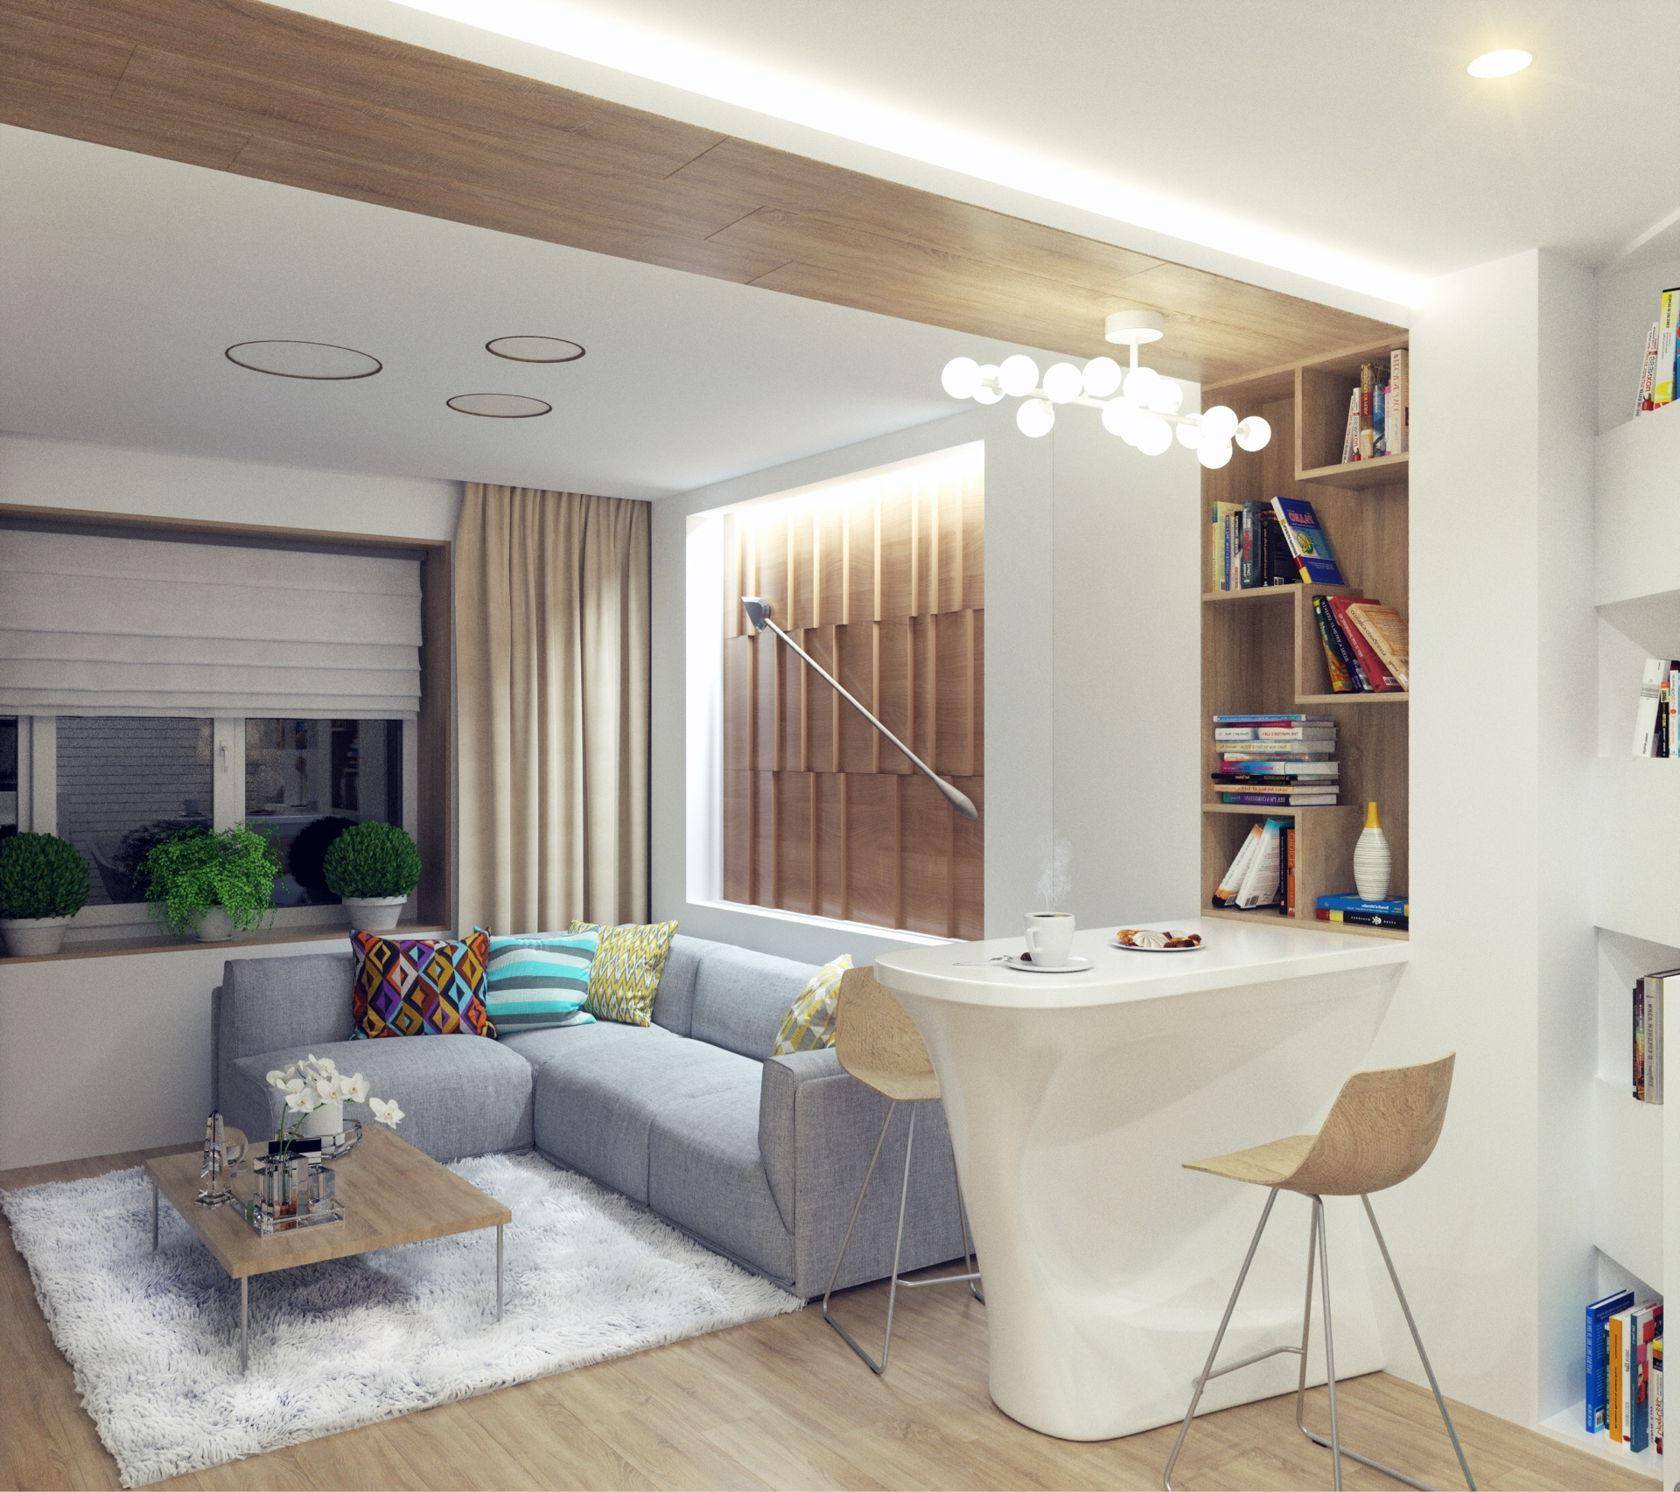 Дизайн интерьера однокомнатной квартиры с нишей, с кроватью. фото — этотдом